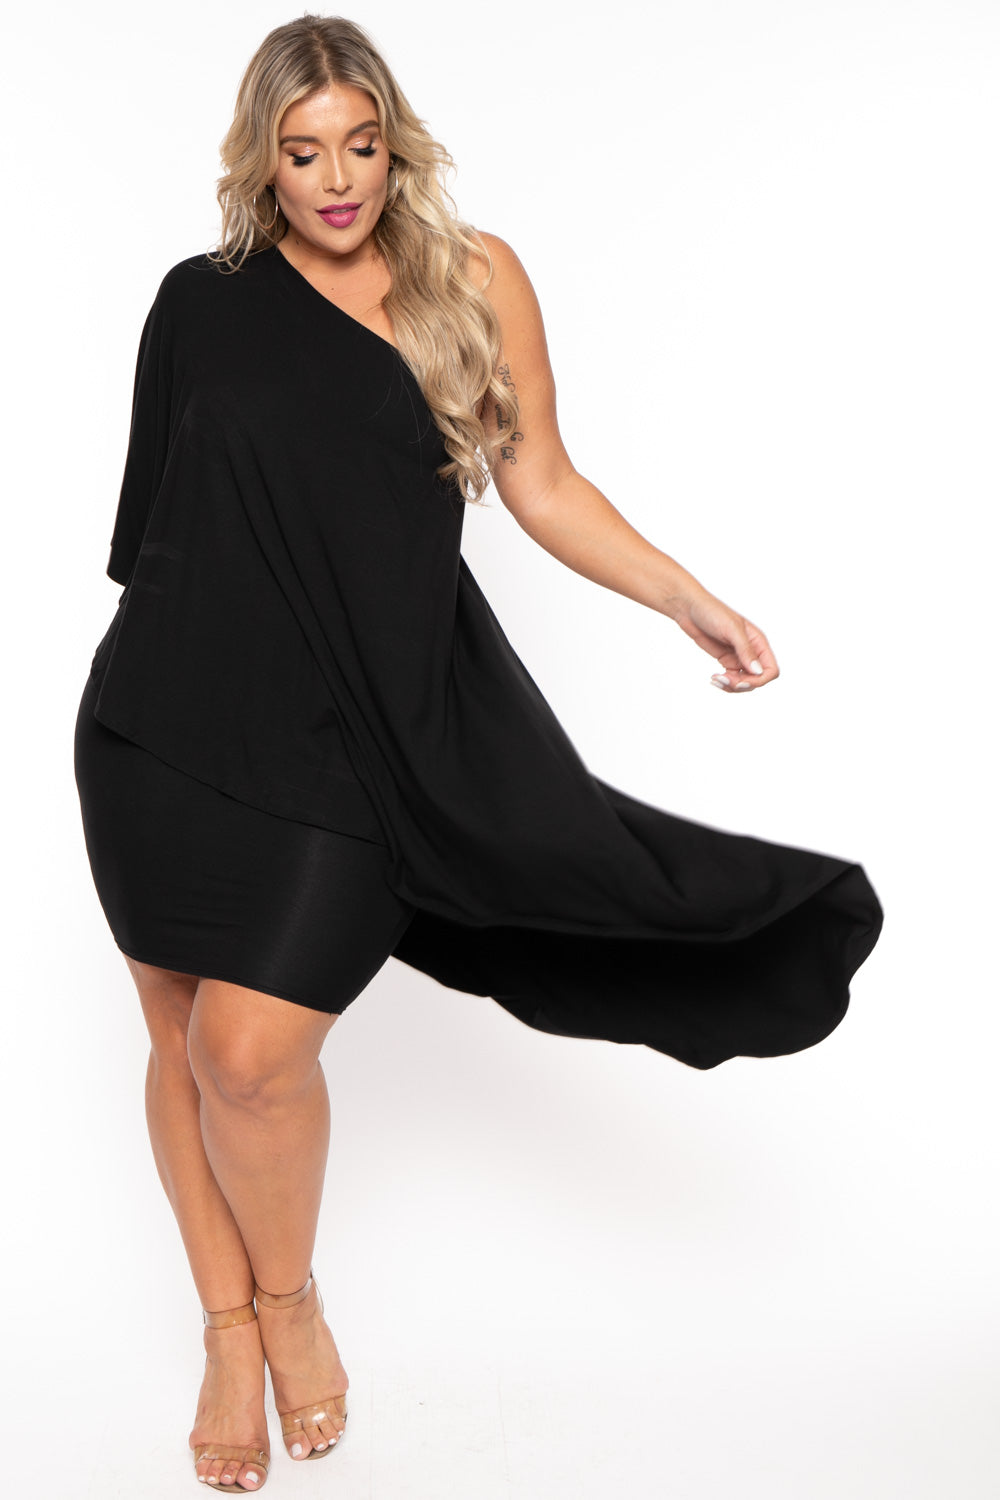 Women's Plus Size Asymmetric Draped Dress - Black - Curvy Sense